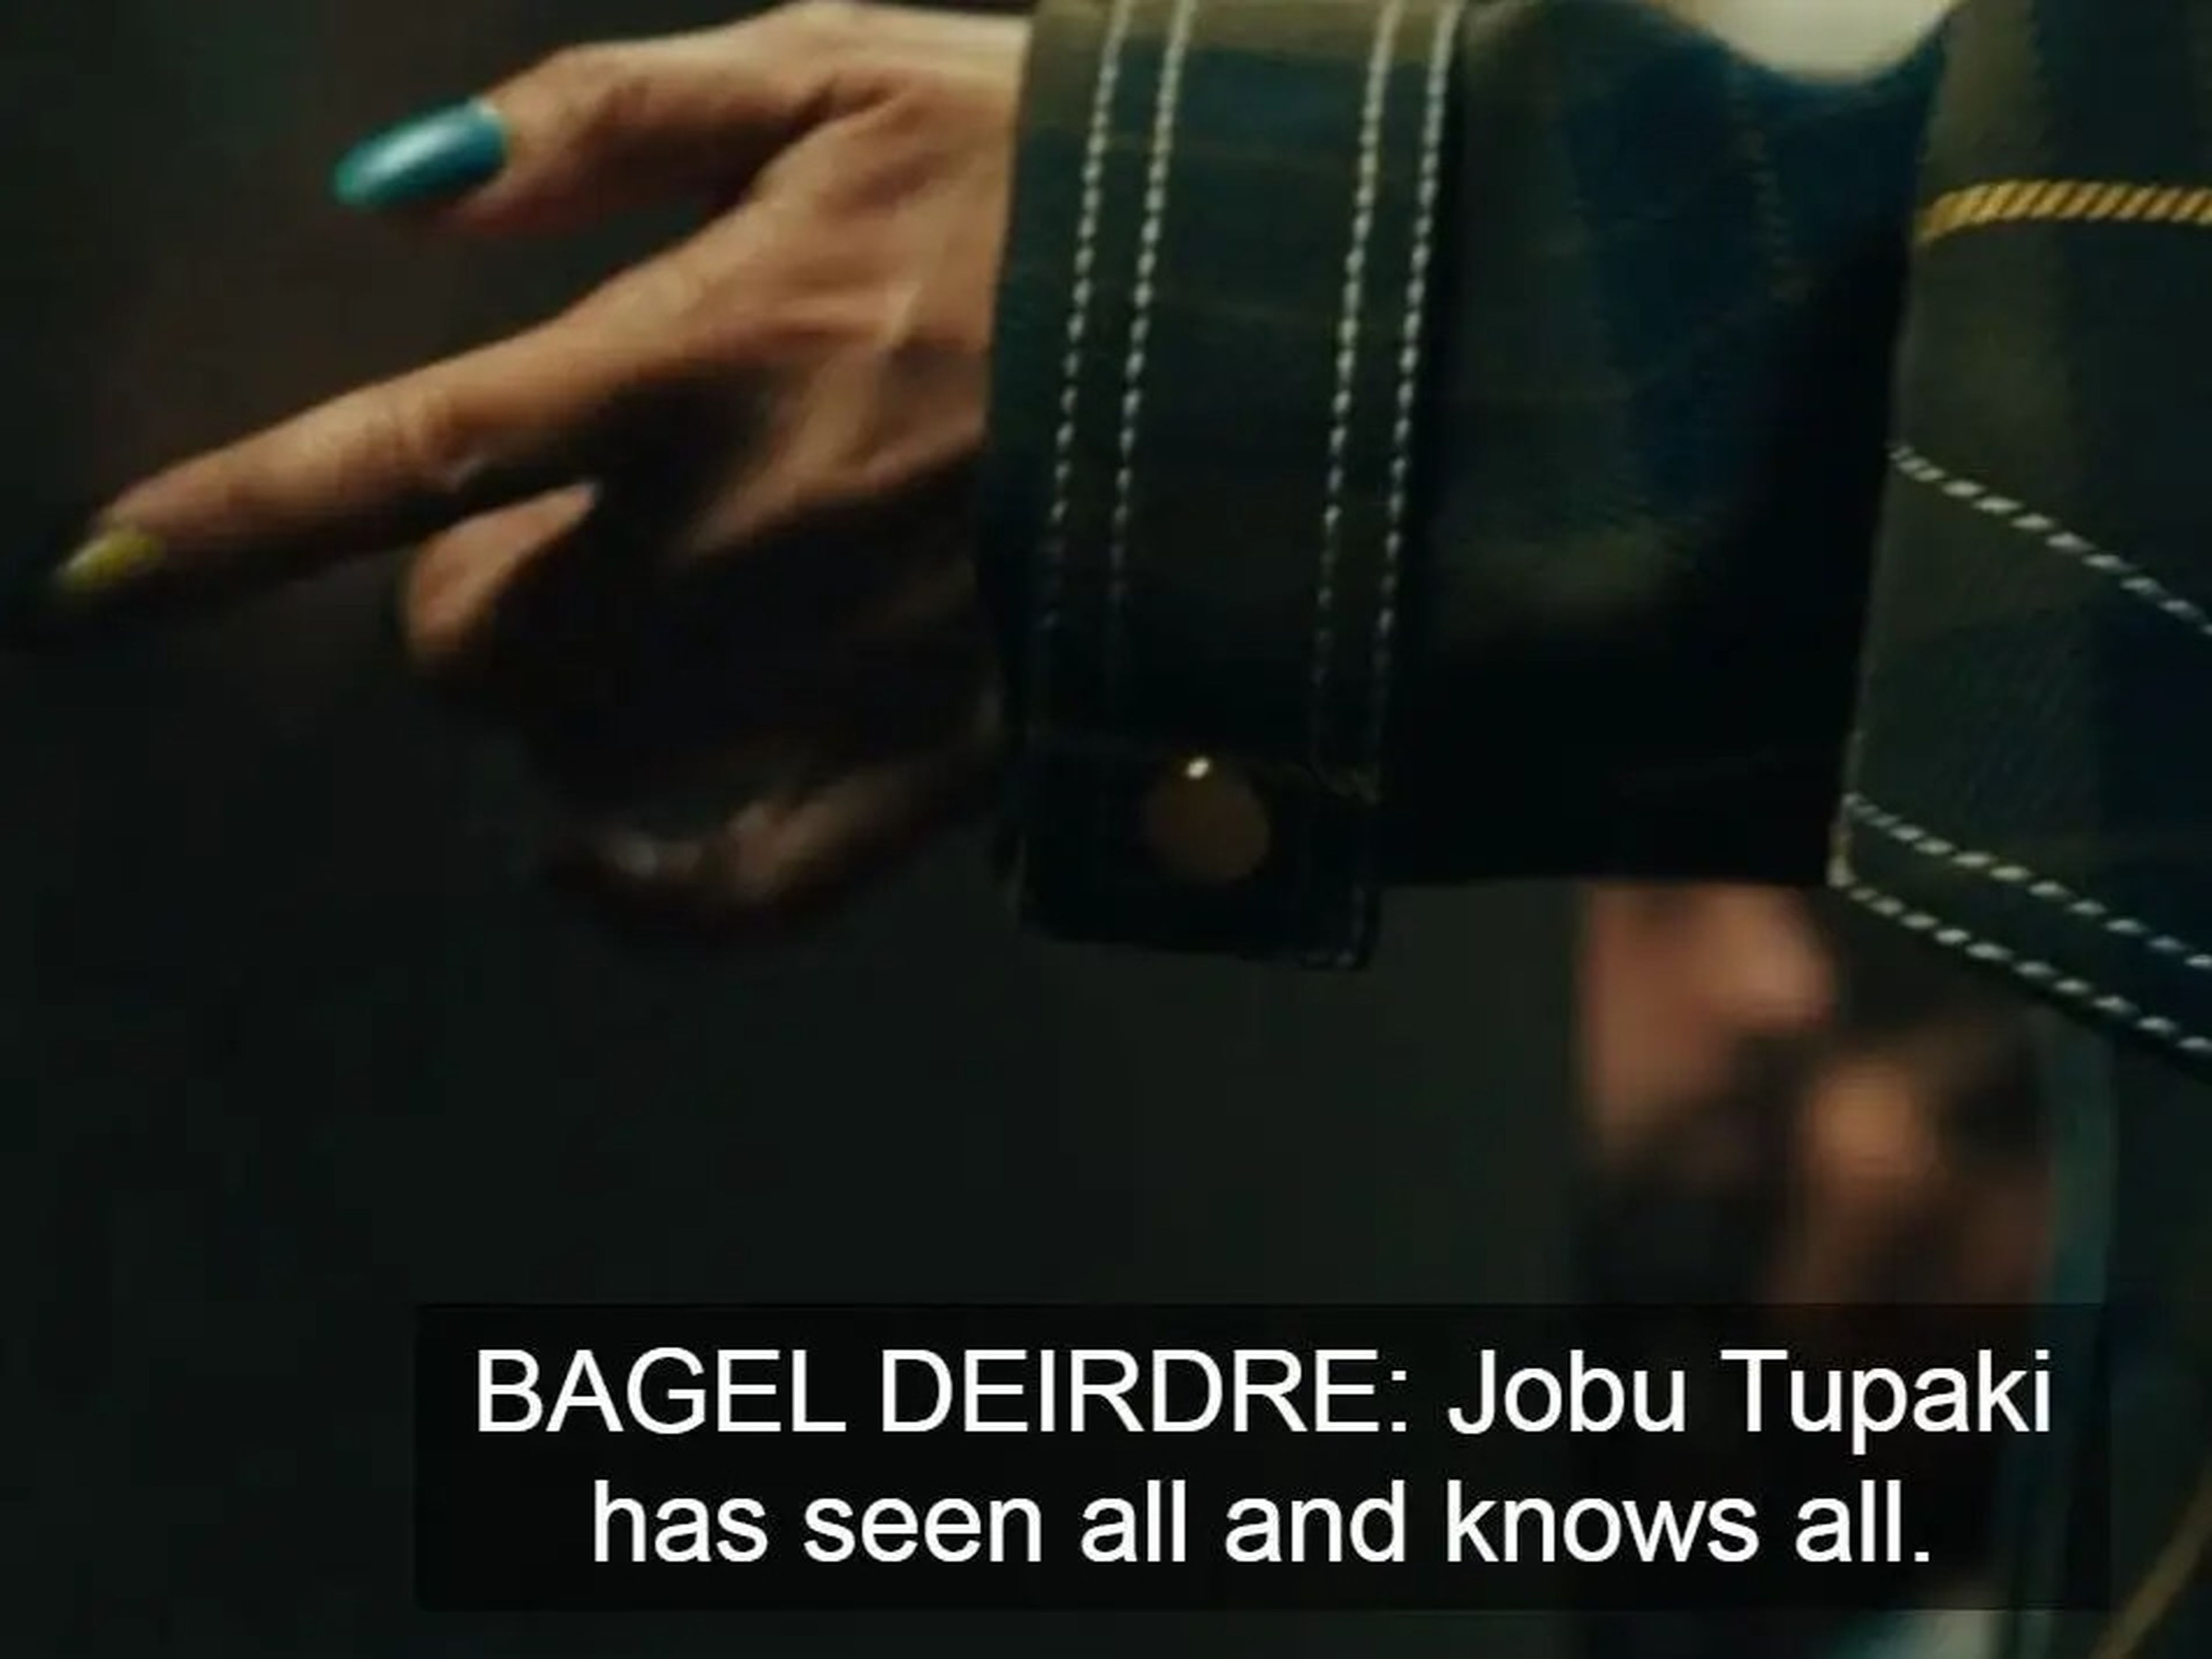 Los subtítulos a lo largo de la película indican qué versión de un personaje está hablando.